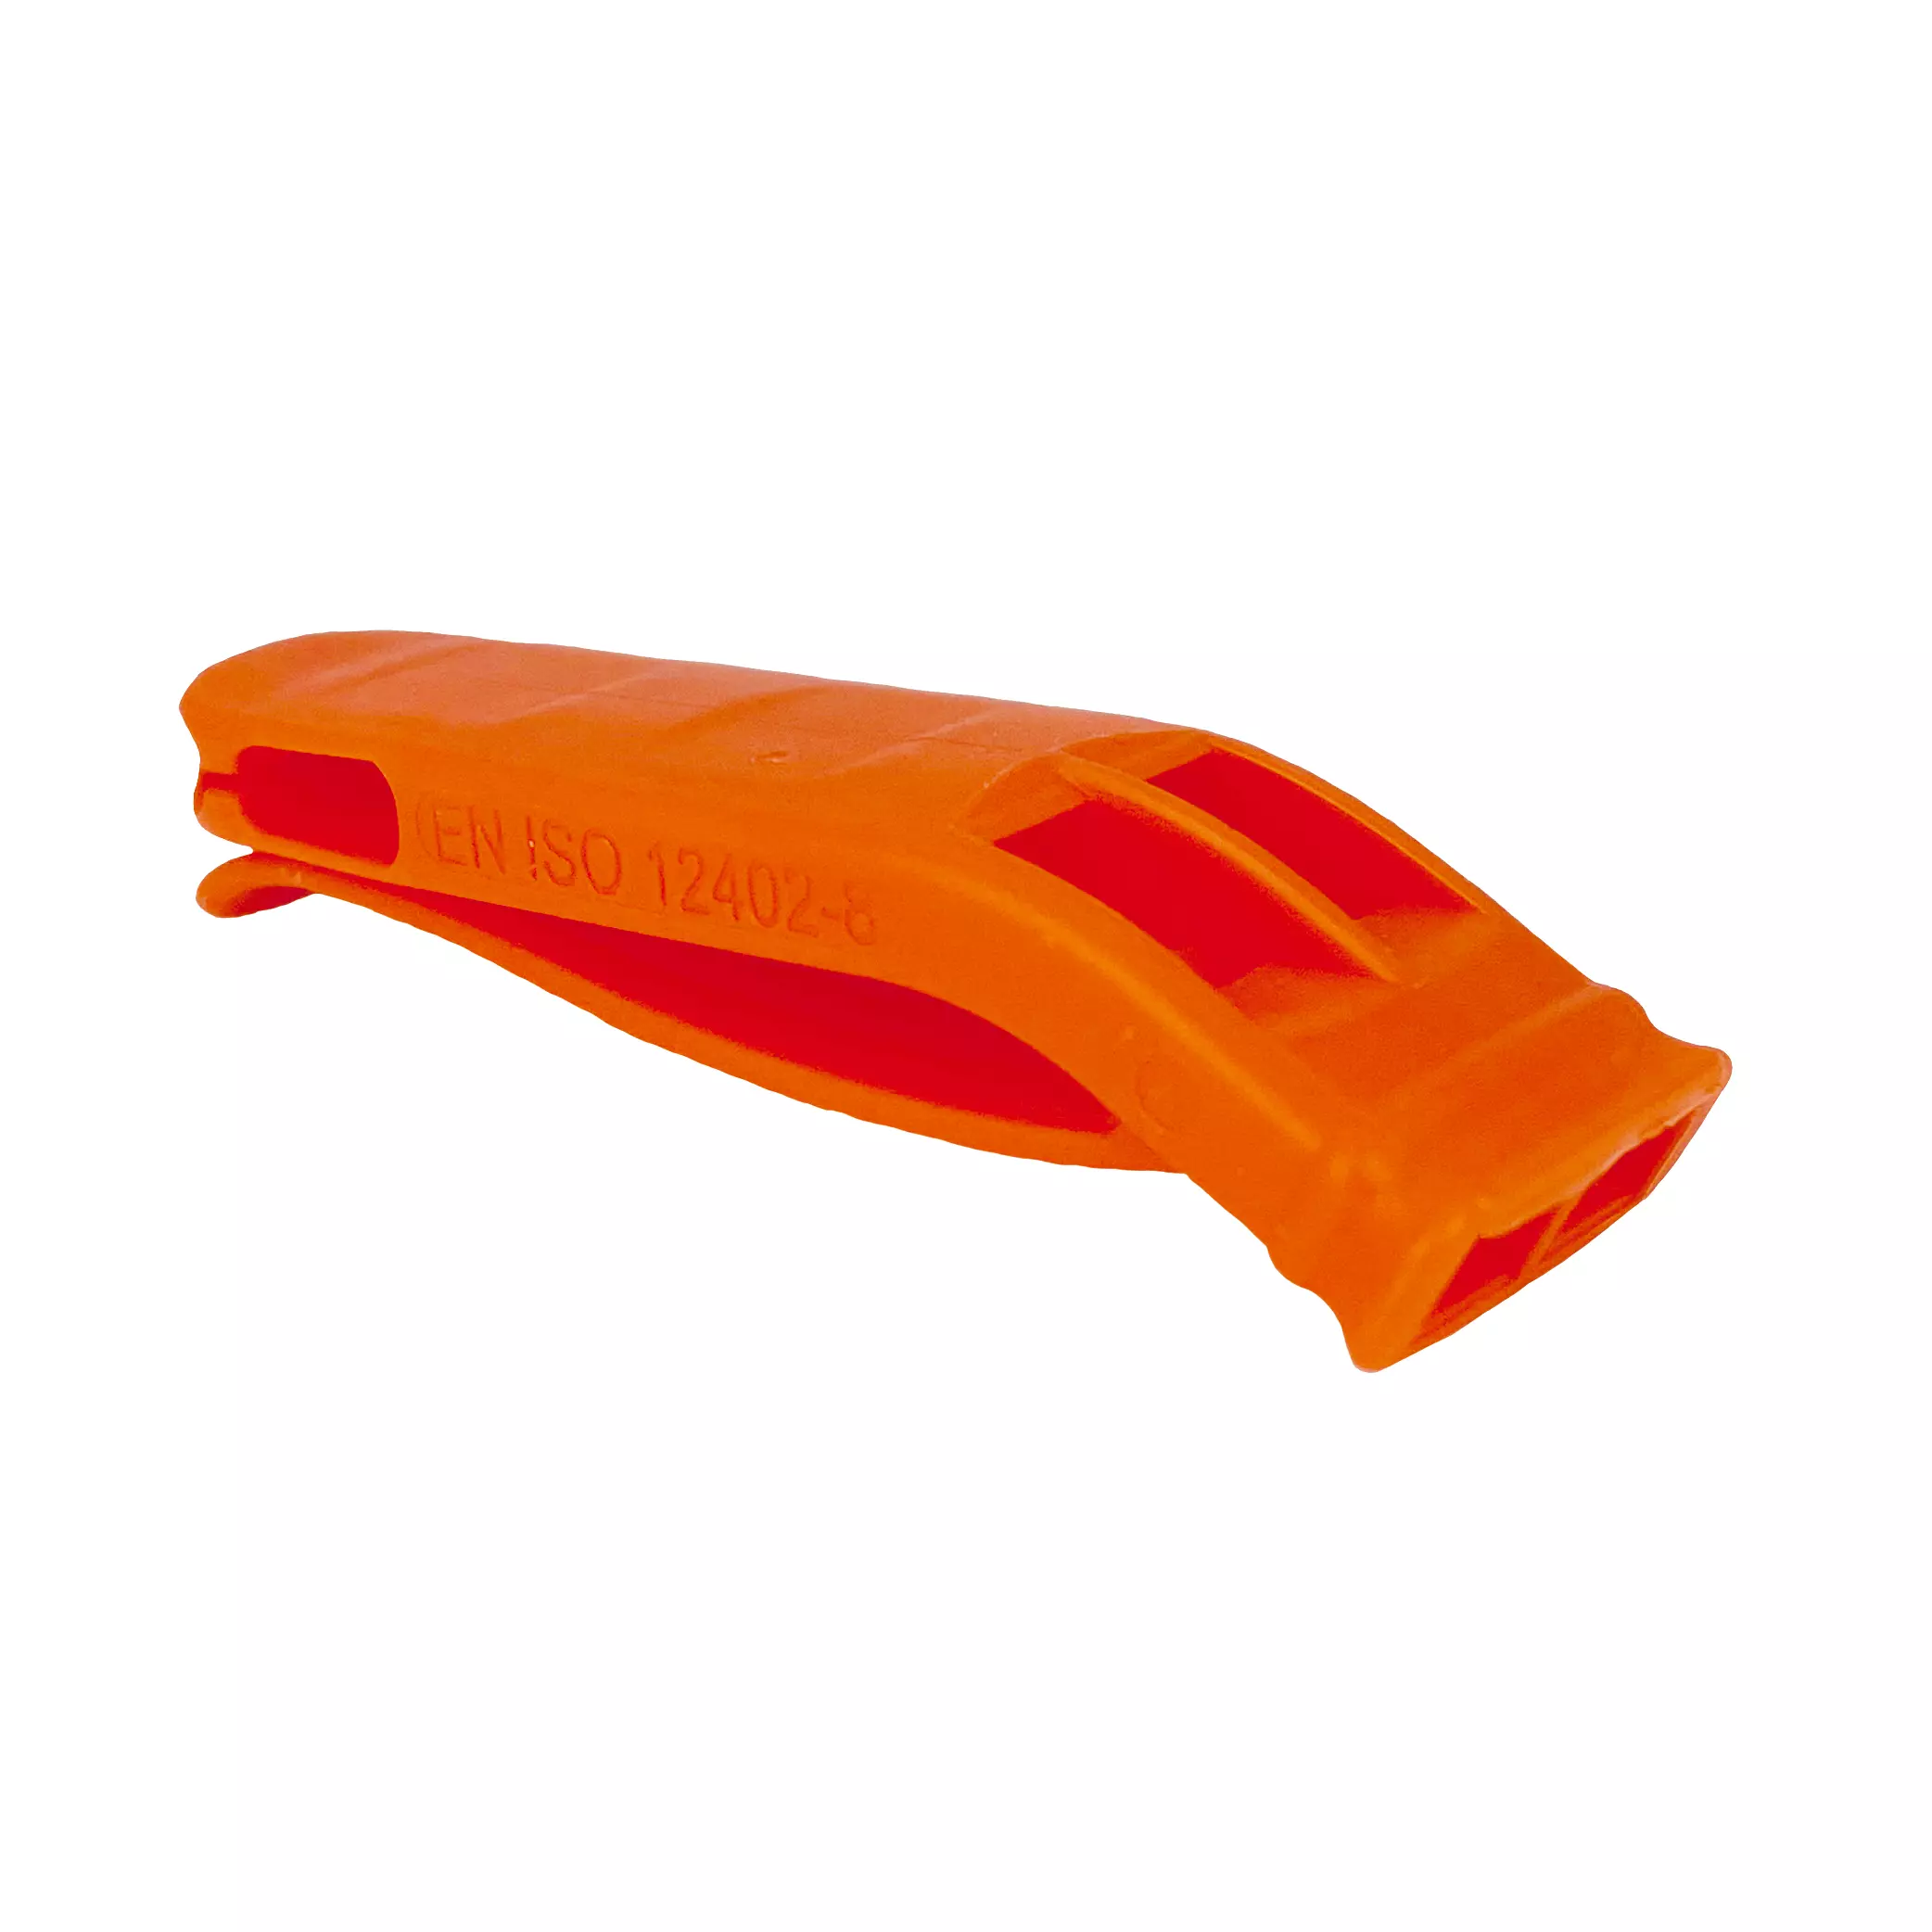 Langer® whistle according to EN 394, orange